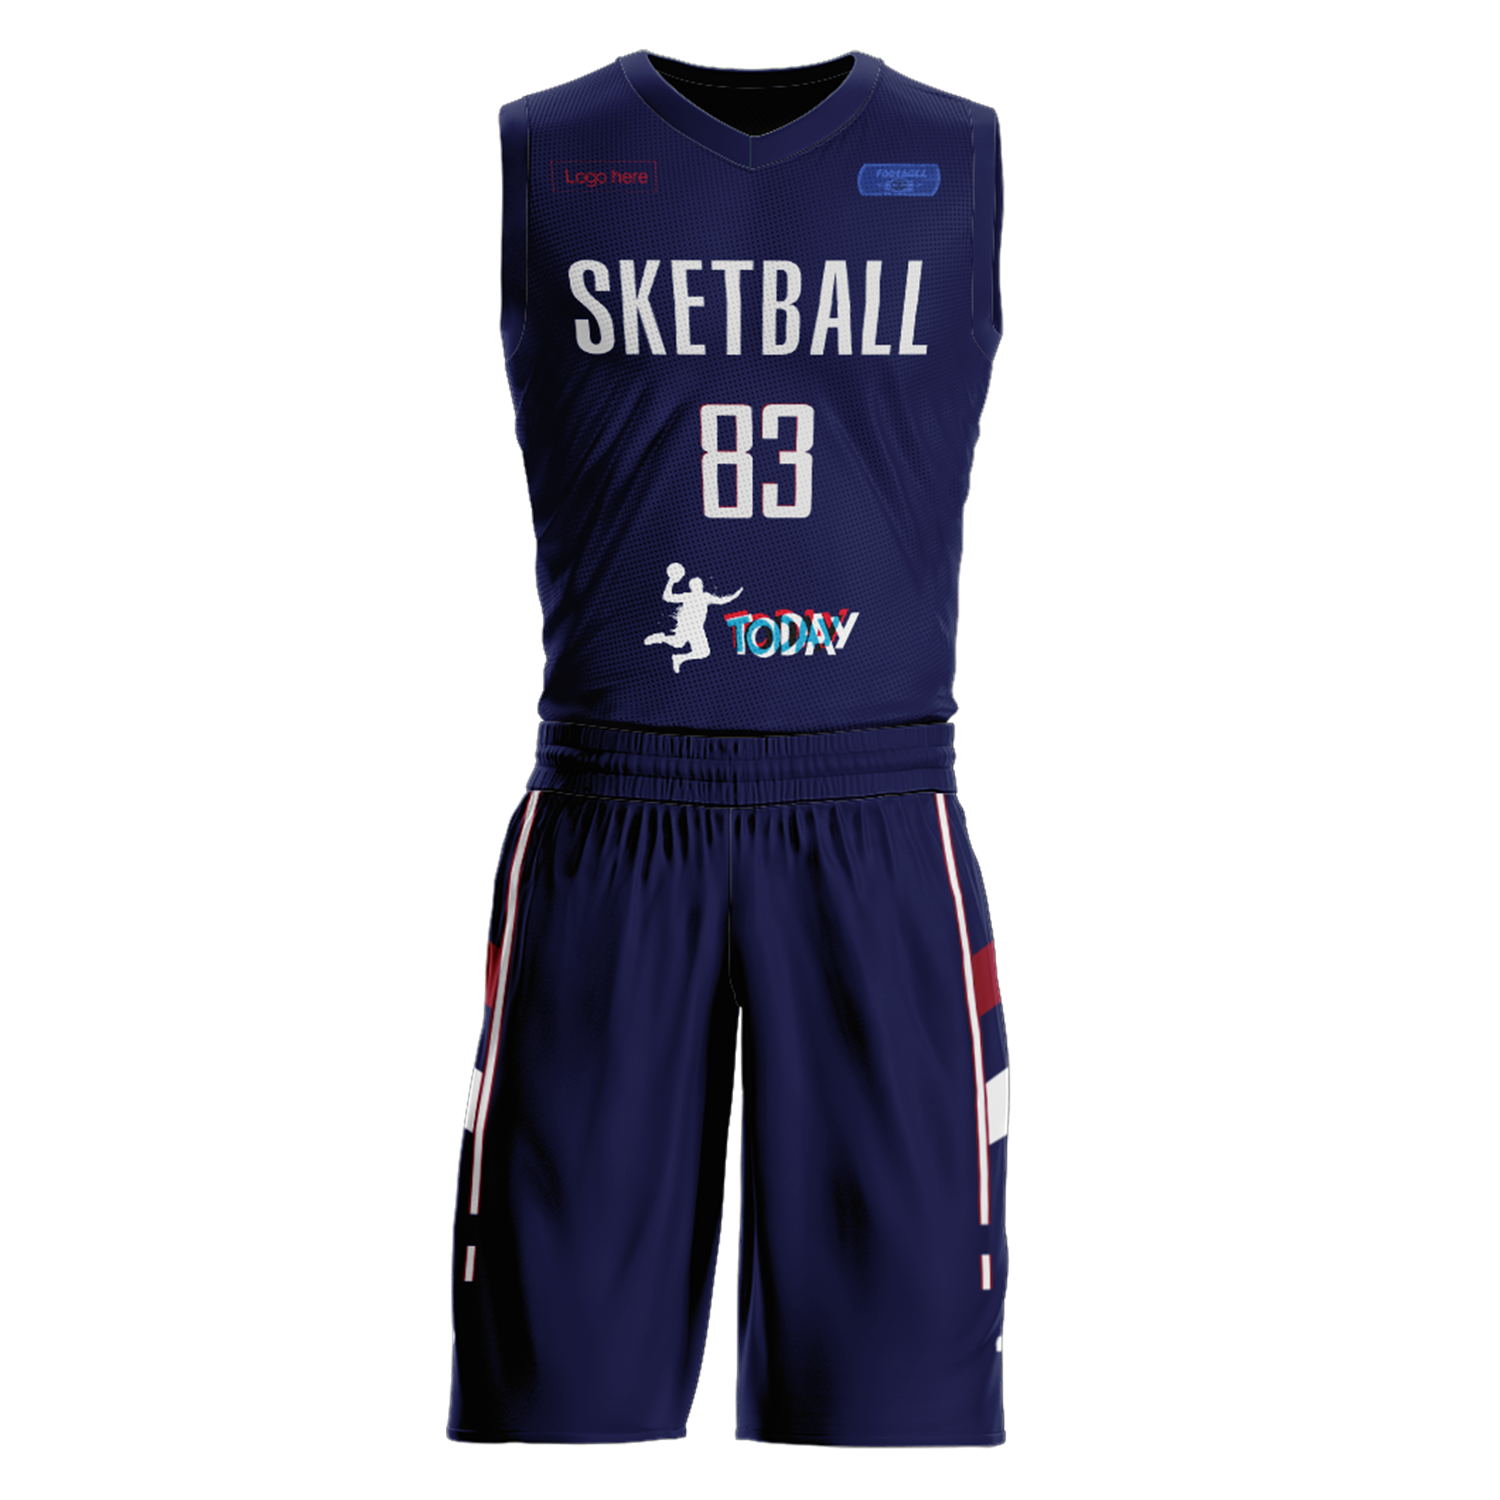 Kundenspezifische Serbien-Team-Basketballanzüge